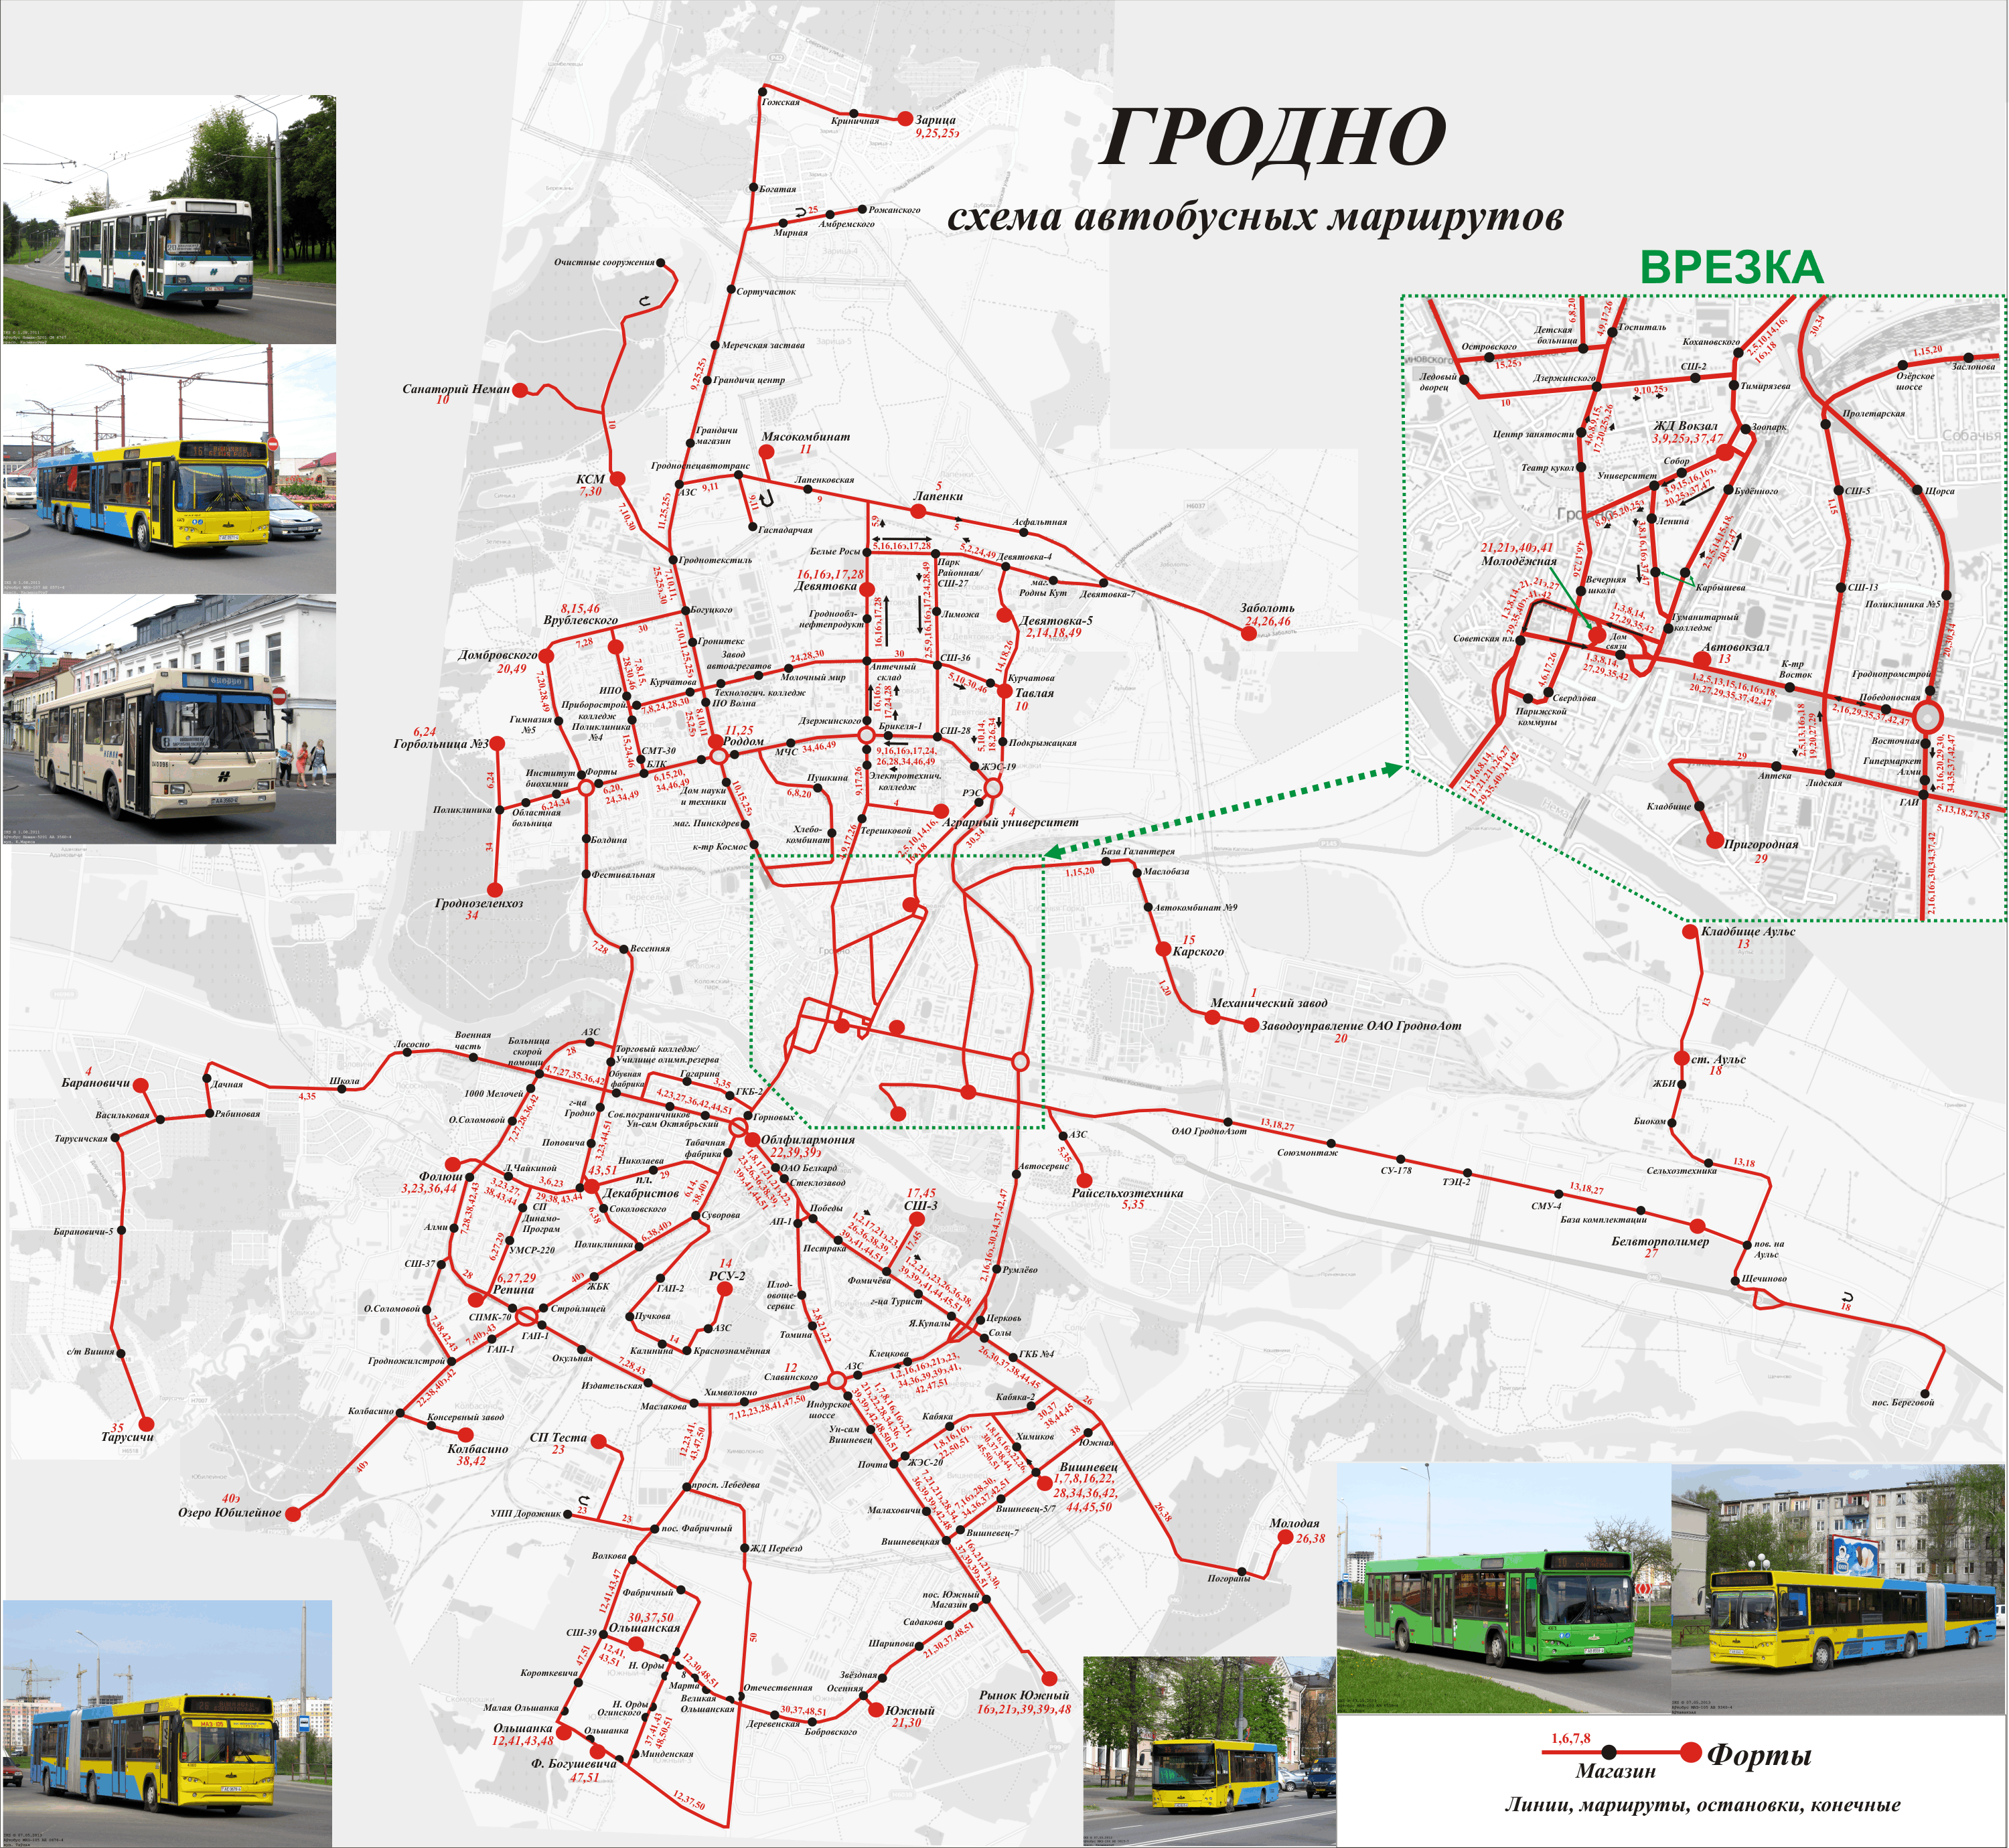 Местоположение гродно. Схема общественного транспорта Гродно. Гродно на карте. Город Гродно на карте. Карта Гродно с достопримечательностями.